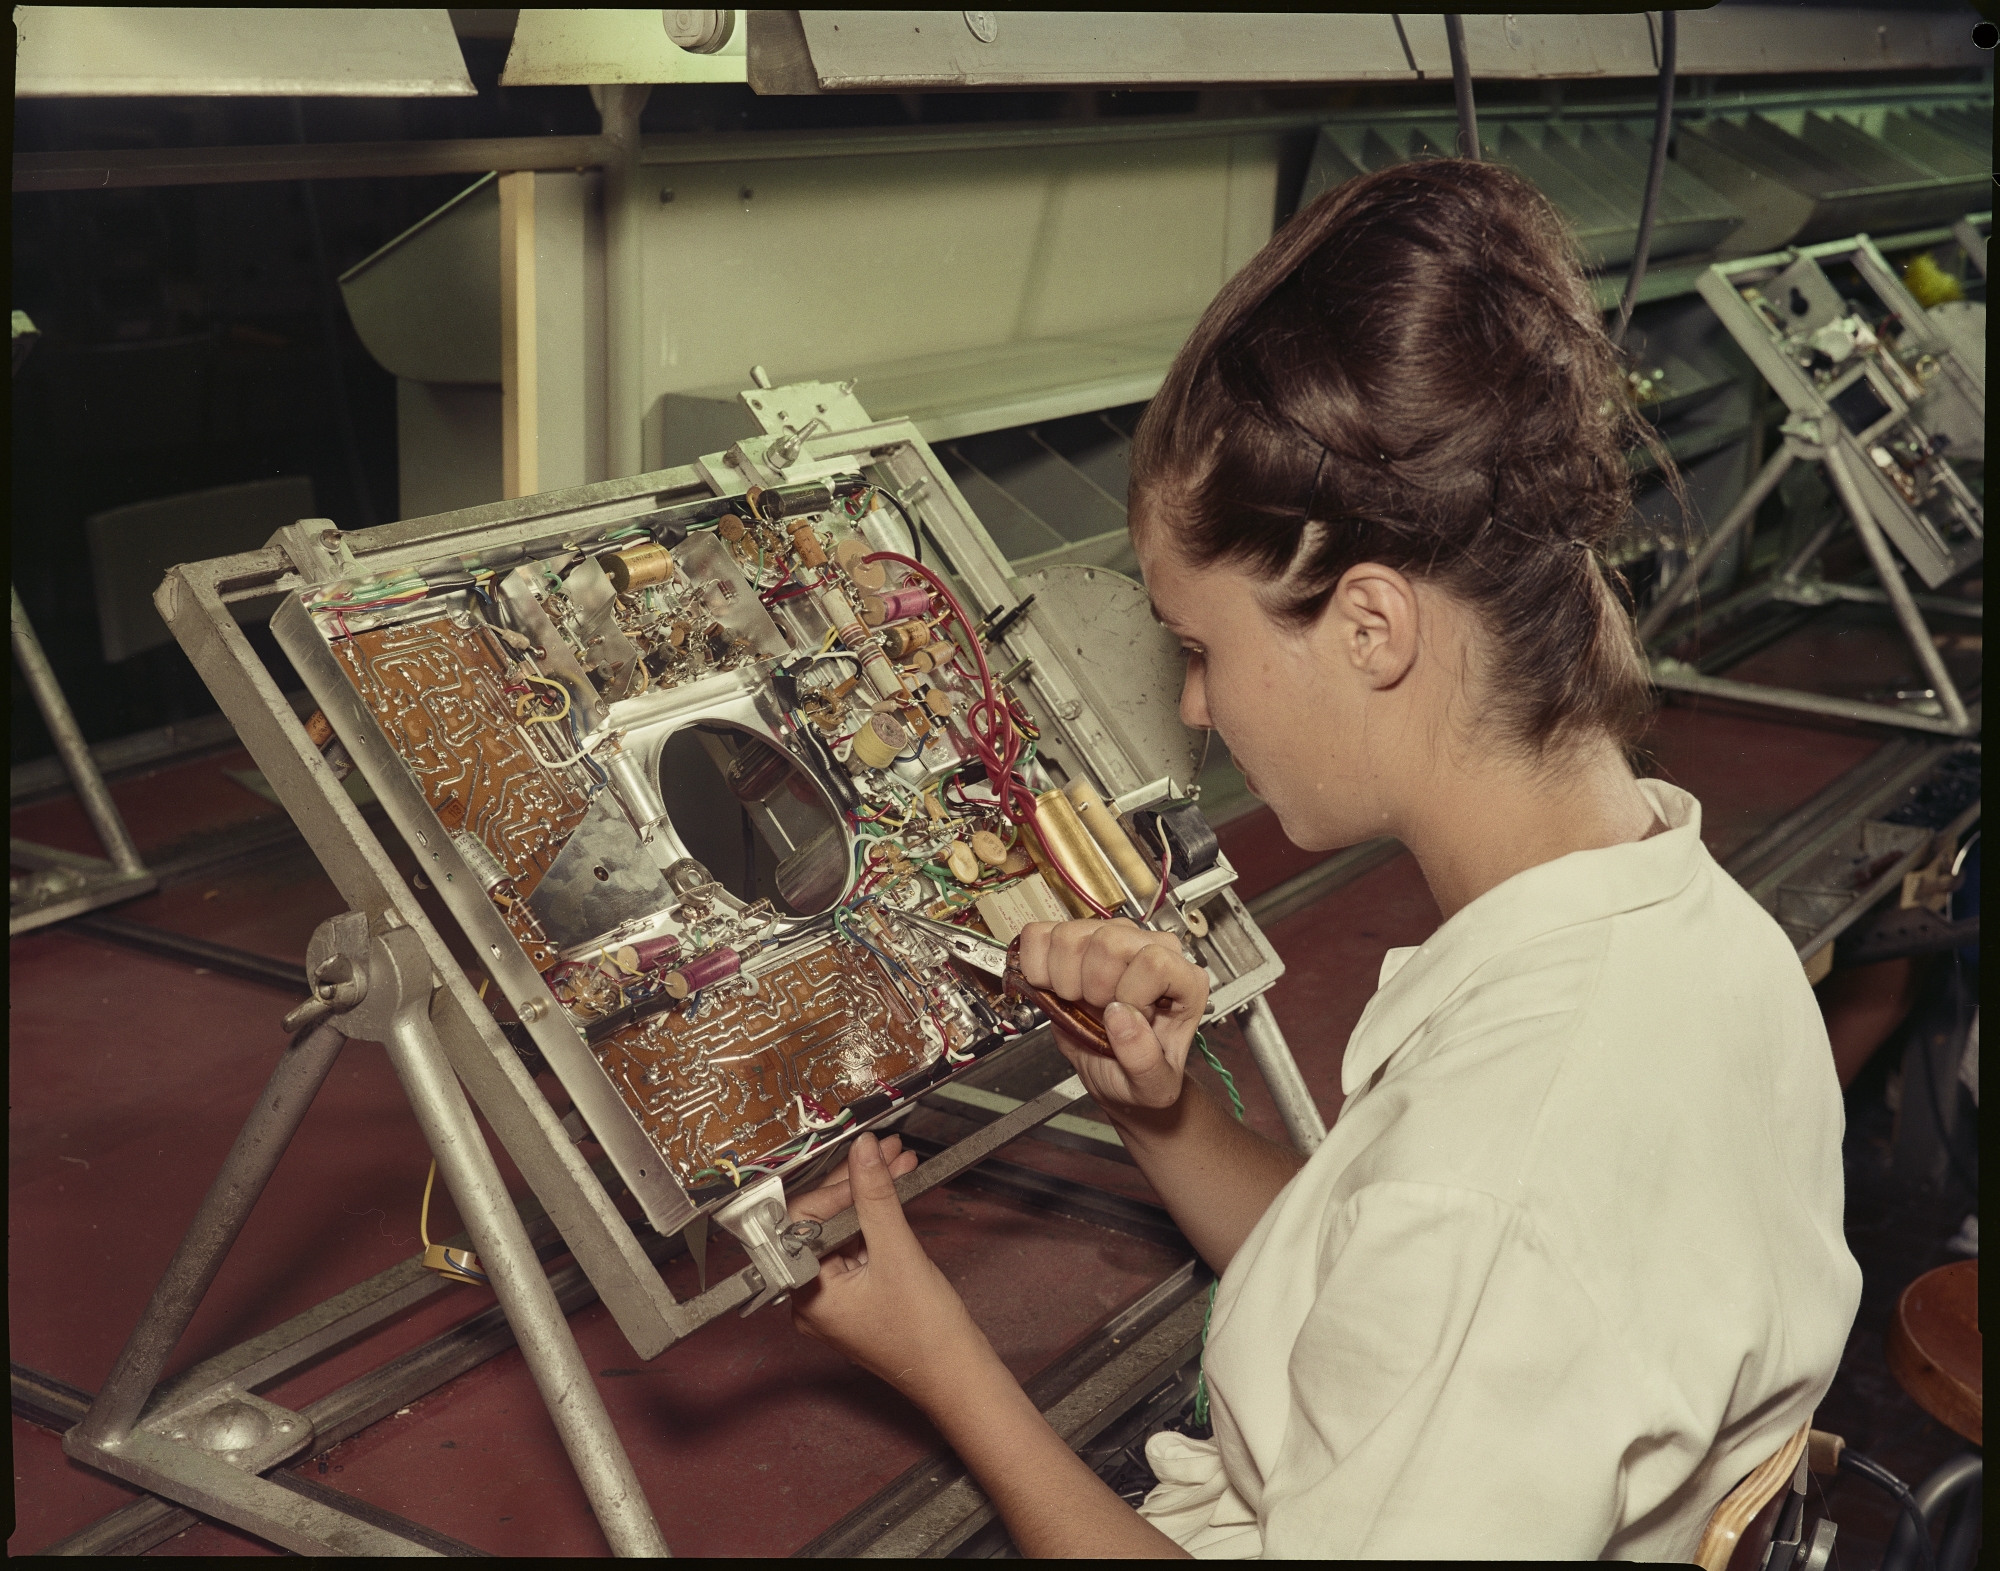 Operaia al lavoro sui componenti di un televisore nello stabilimento della Emerson di Firenze, 1961 Fotografia di Publifoto Archivio Publifoto Intesa Sanpaolo